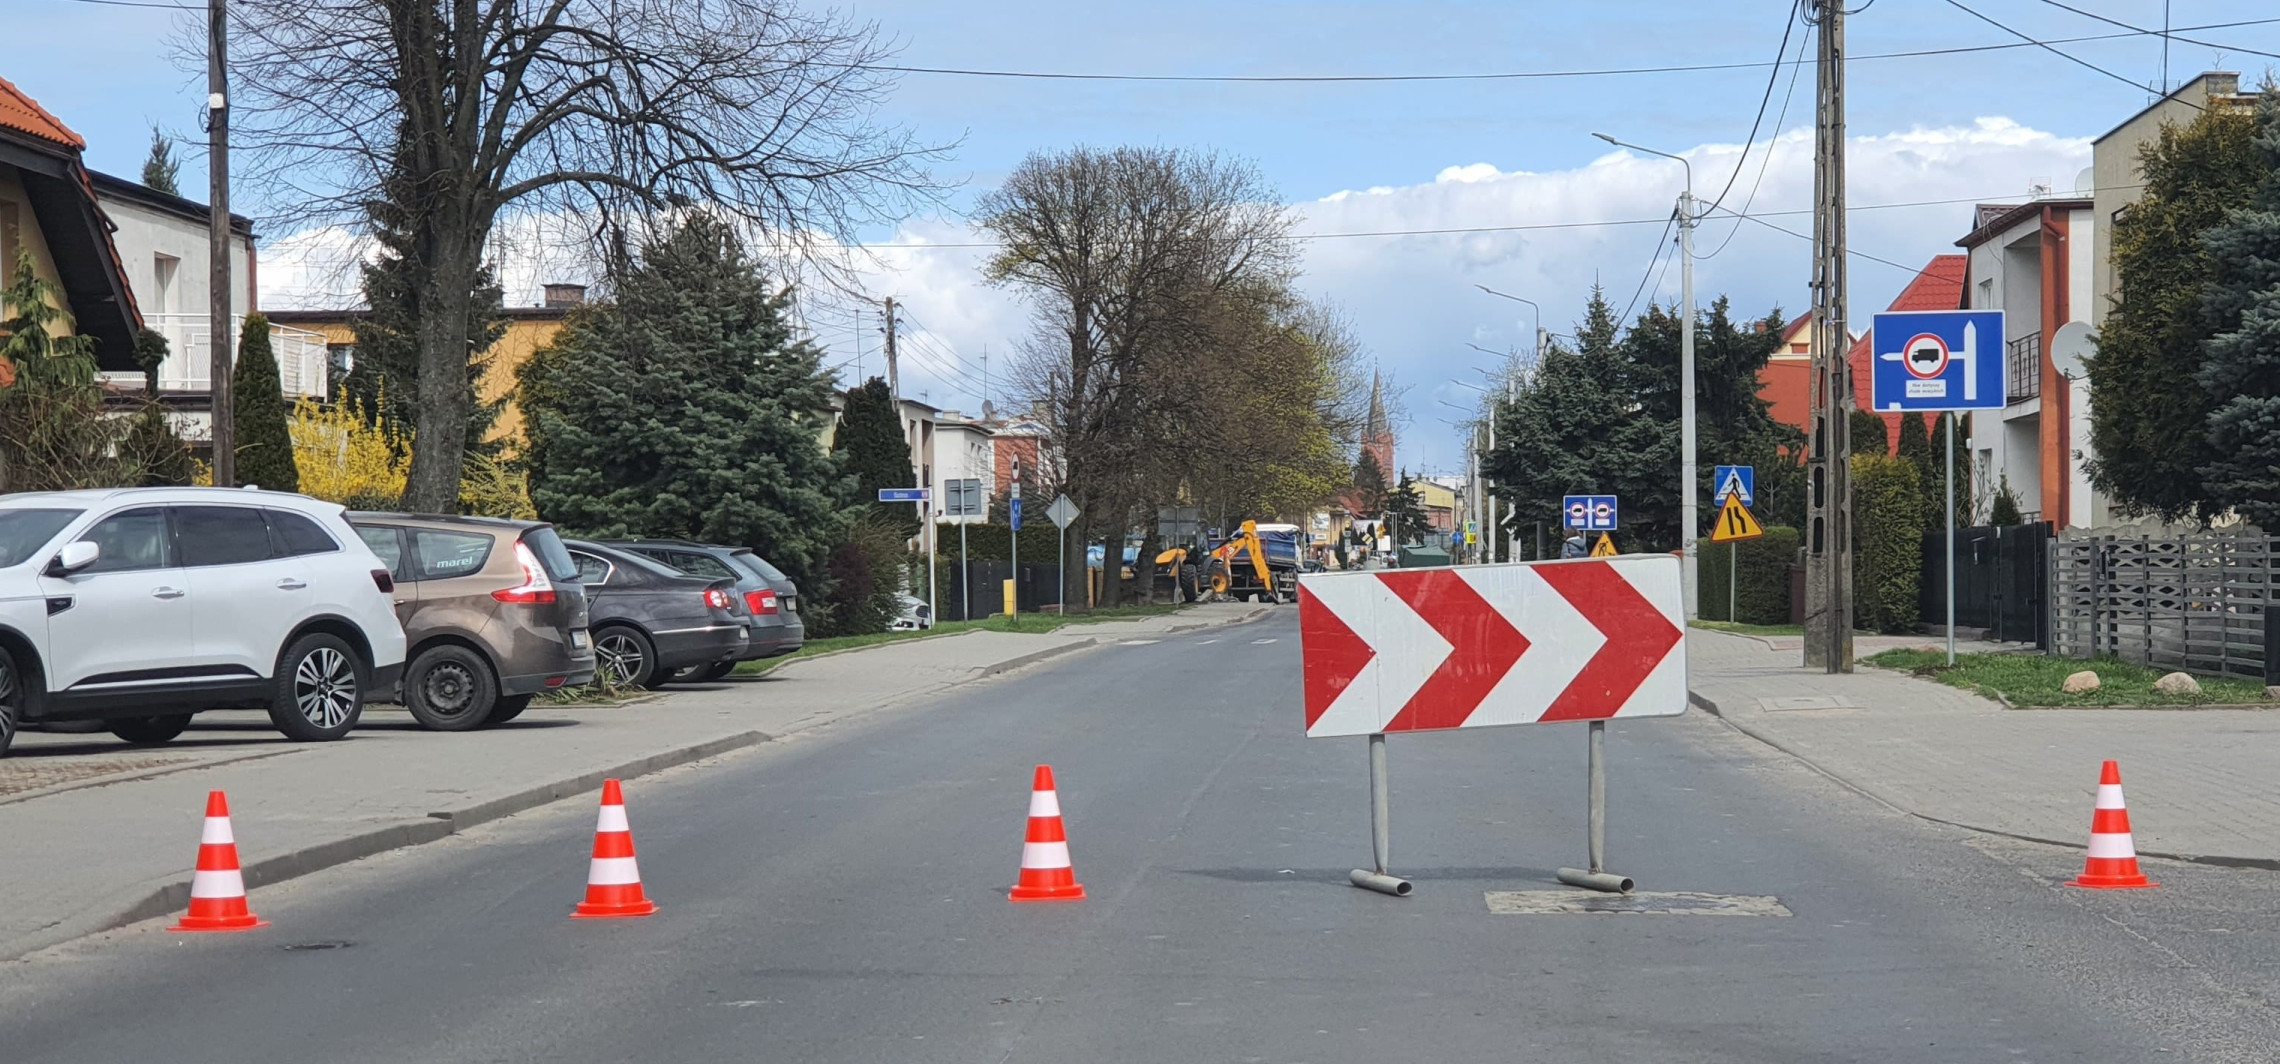 Inowrocław - Zamknięta ważna ulica, przez awarię wodociągu